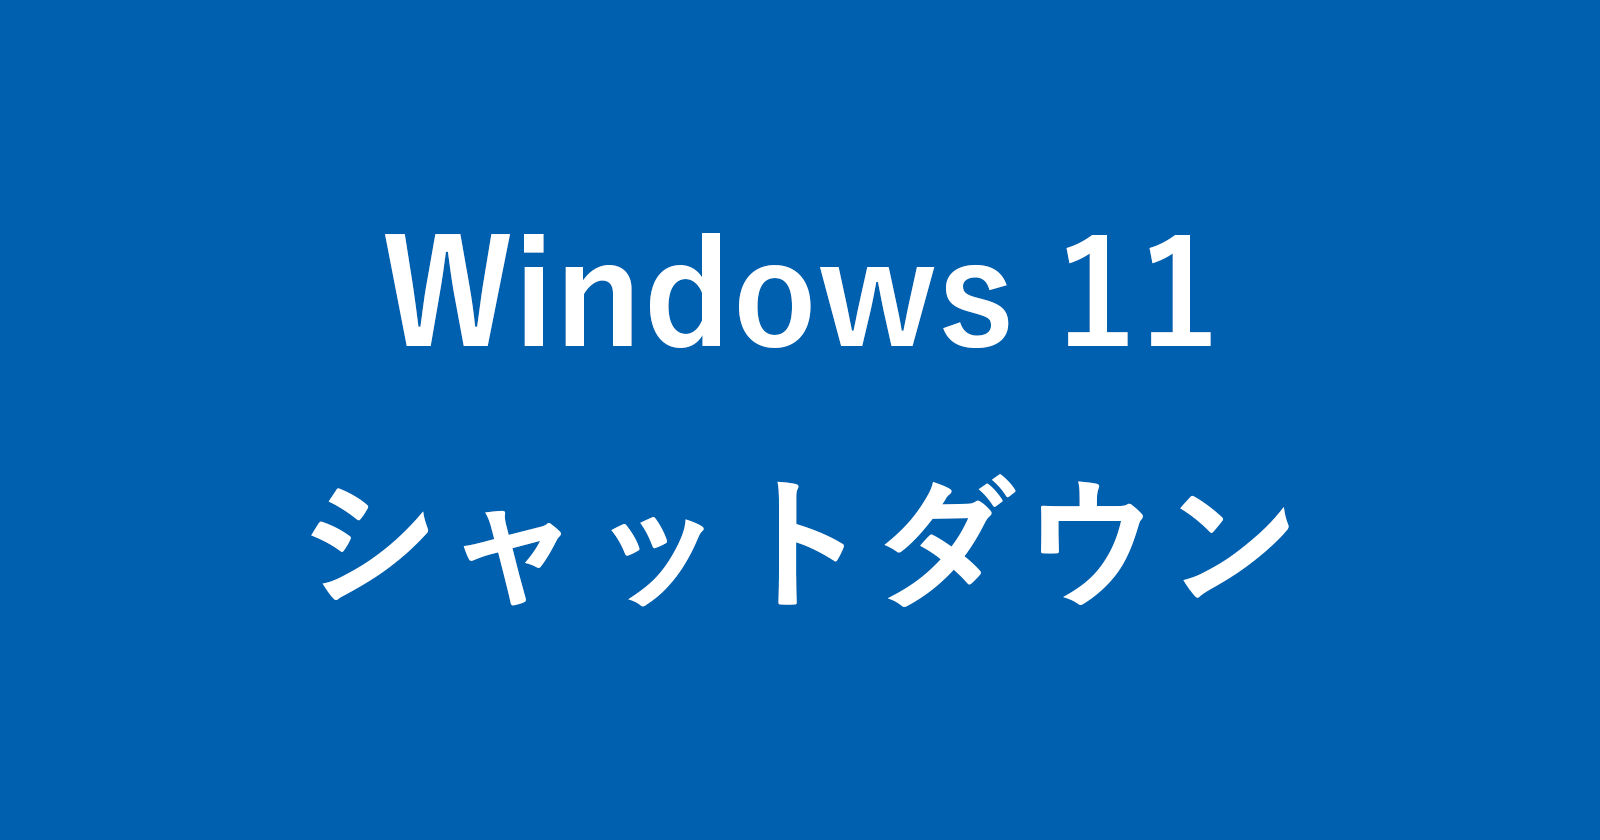 windows 11 shutdown